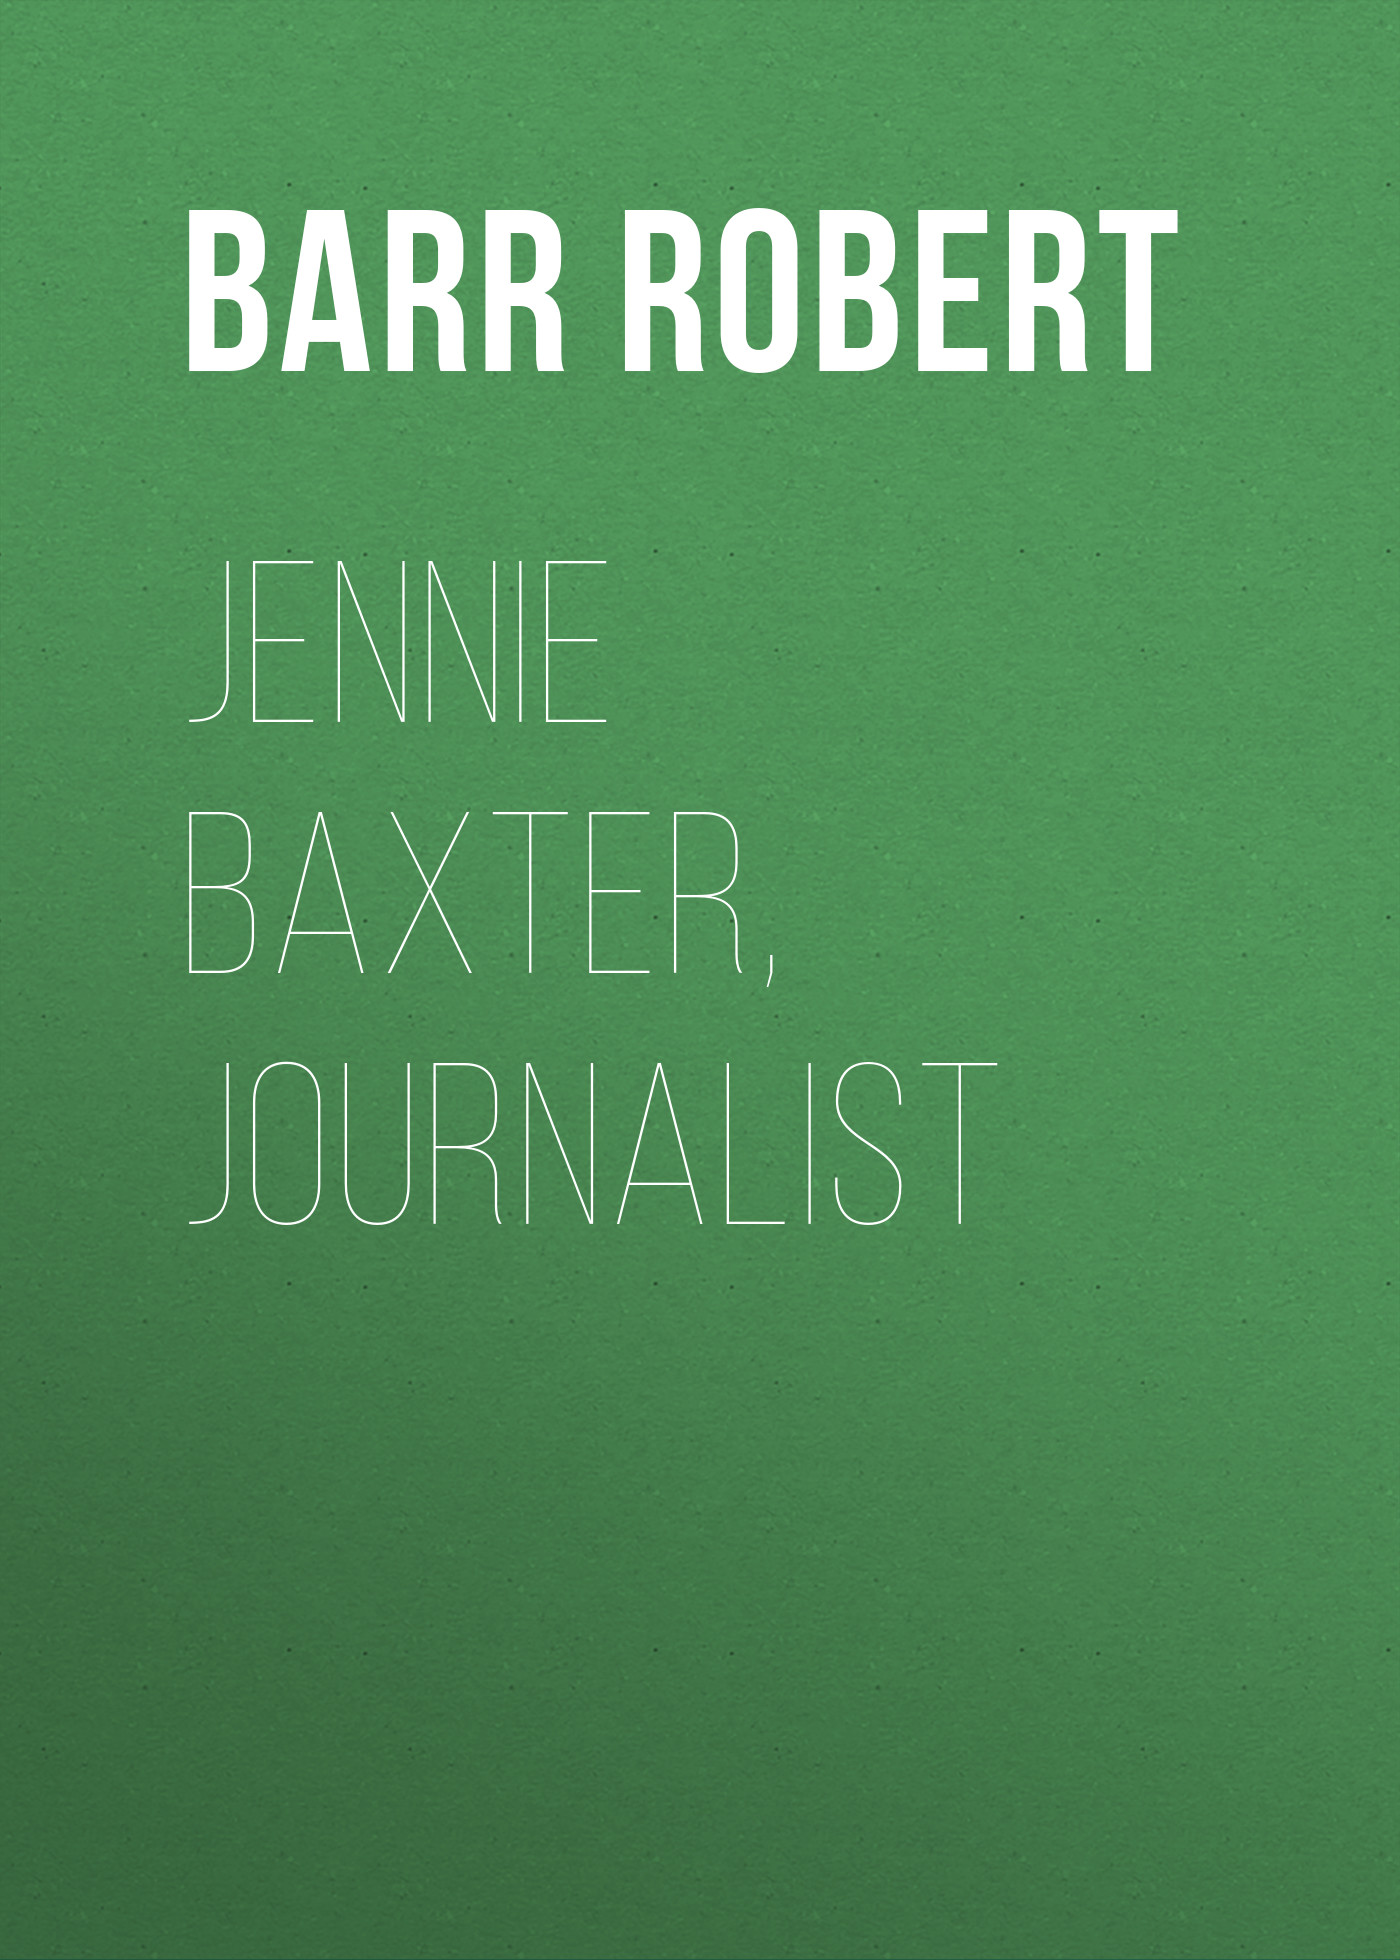 Книга Jennie Baxter, Journalist из серии , созданная Robert Barr, может относится к жанру Зарубежная классика, Зарубежная старинная литература. Стоимость электронной книги Jennie Baxter, Journalist с идентификатором 36364726 составляет 0 руб.